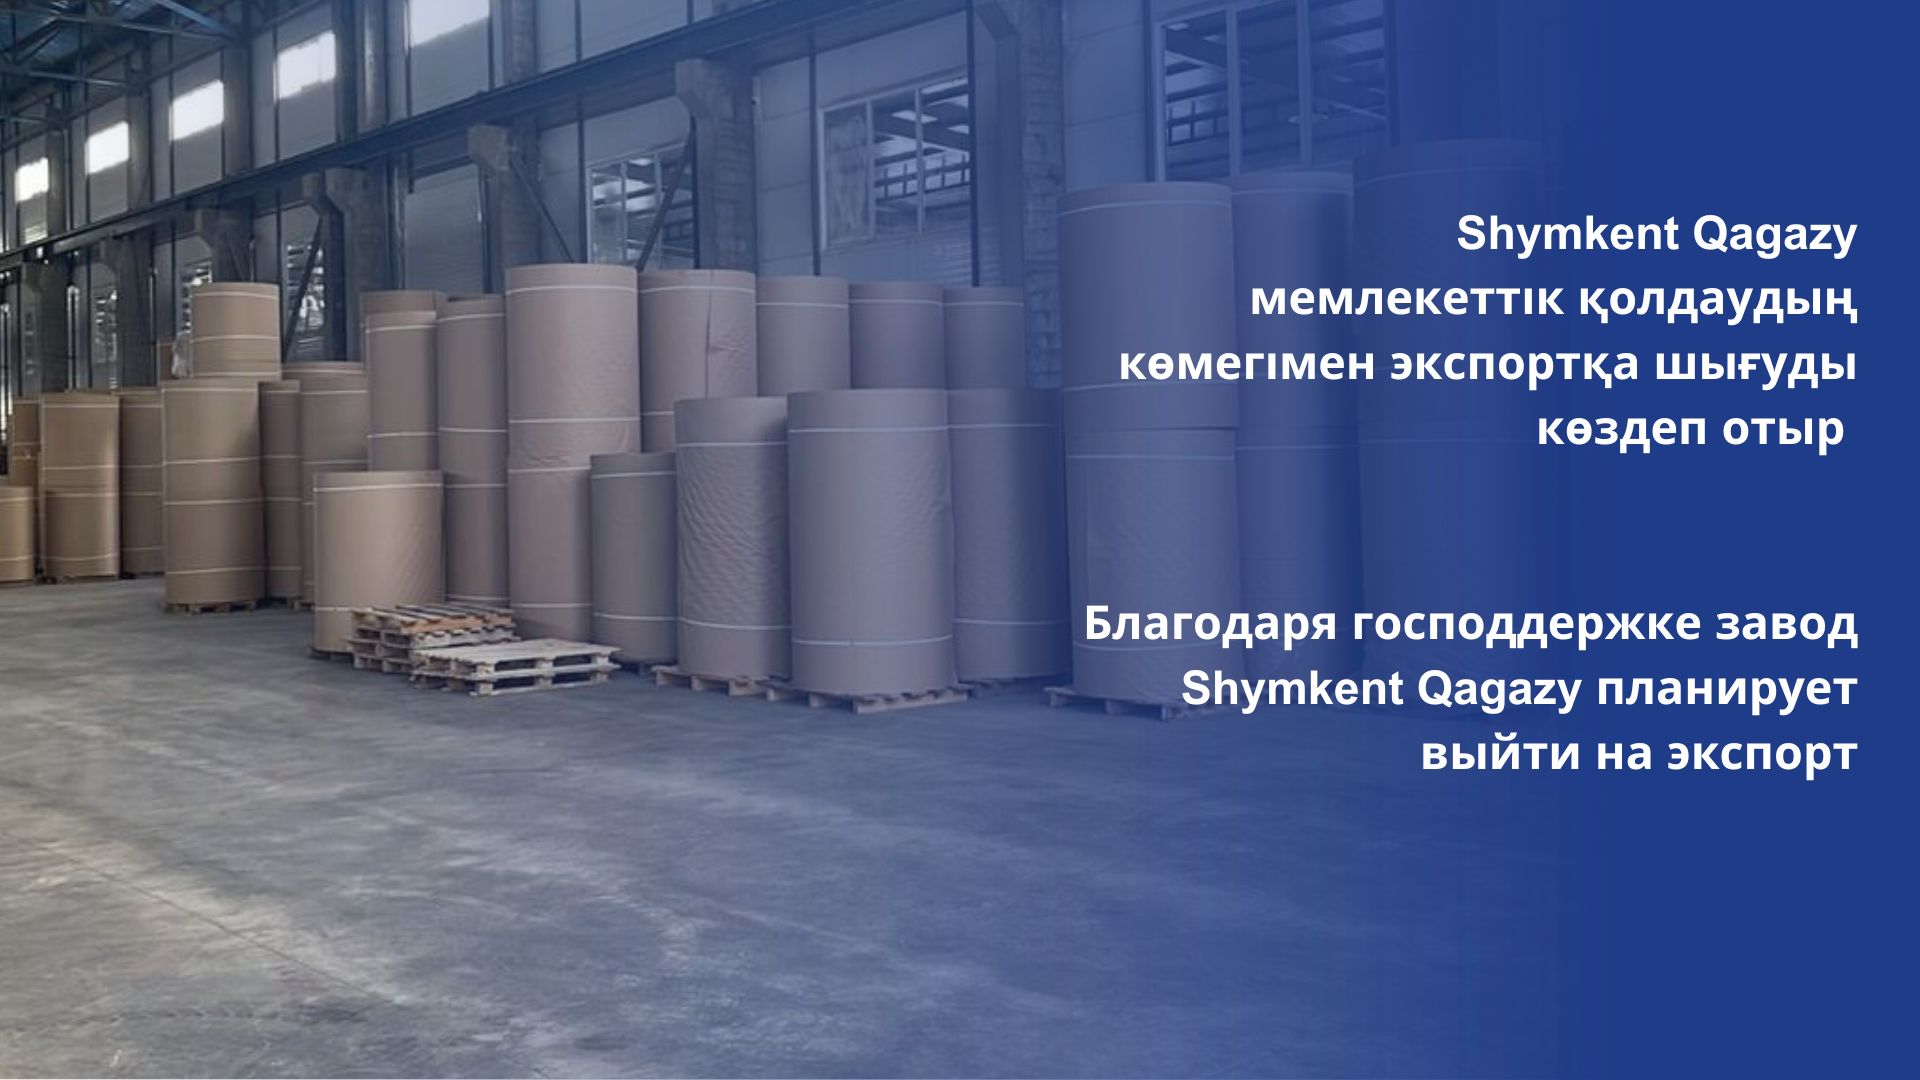 Благодаря господдержке завод Shymkent Qagazy планирует выйти на экспорт